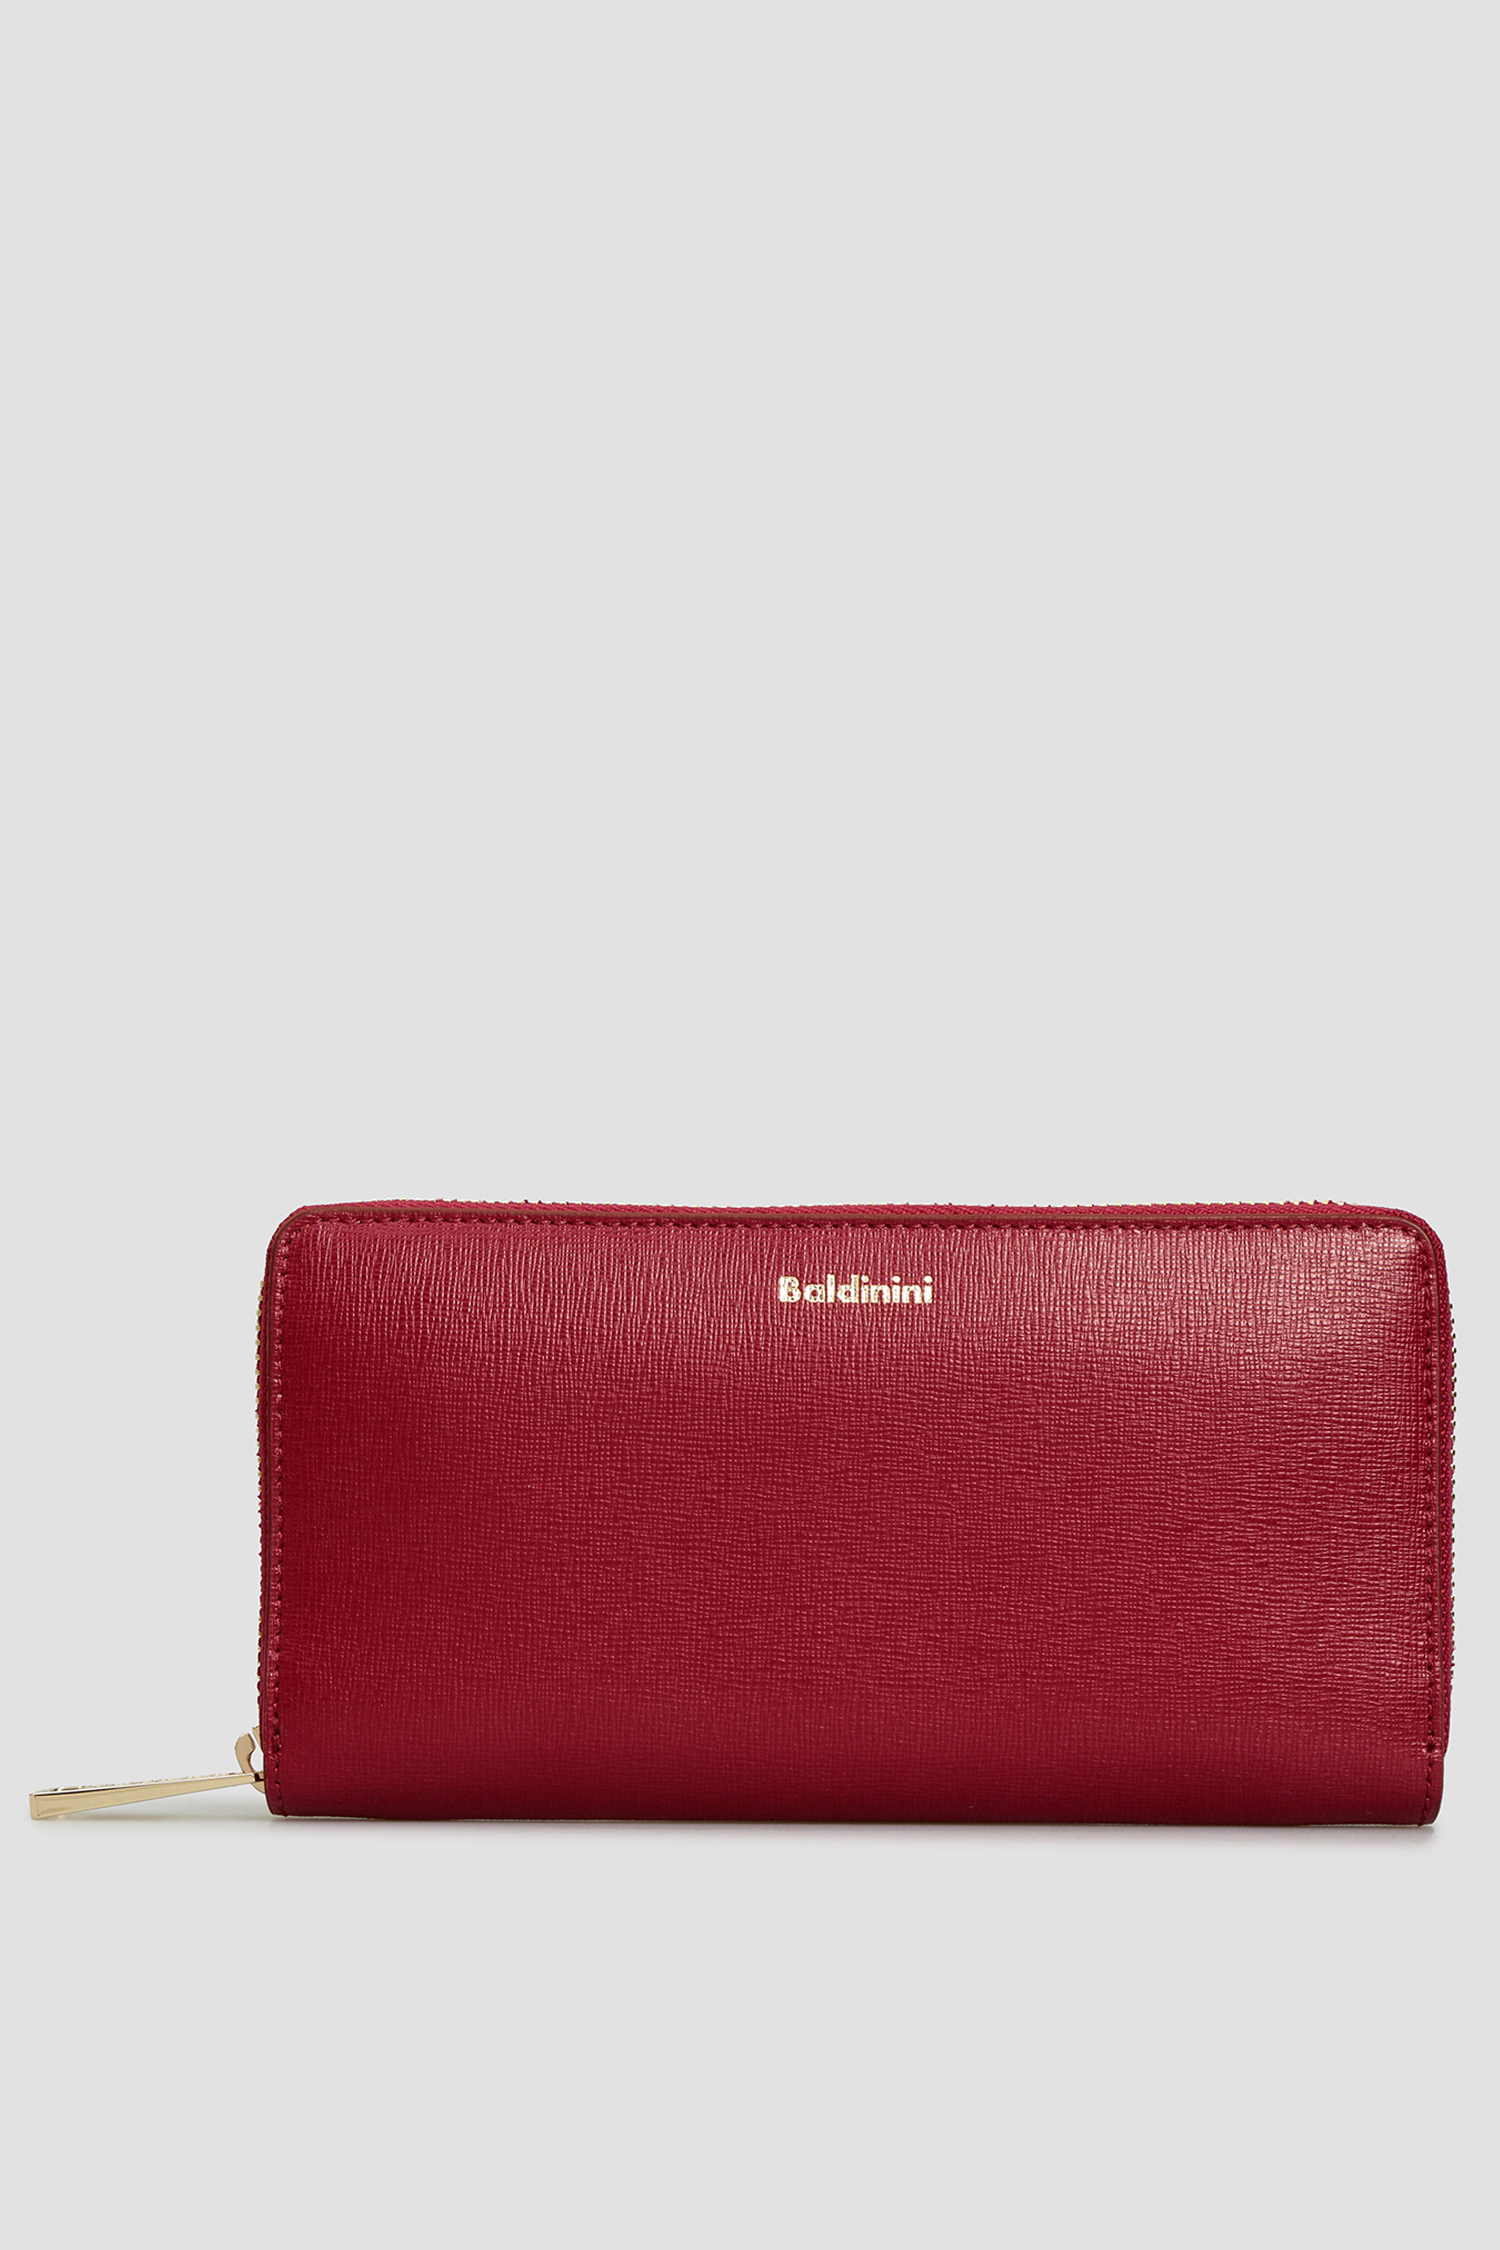 Жіночий бордовий шкіряний гаманець Baldinini P2B002SAFF;7000